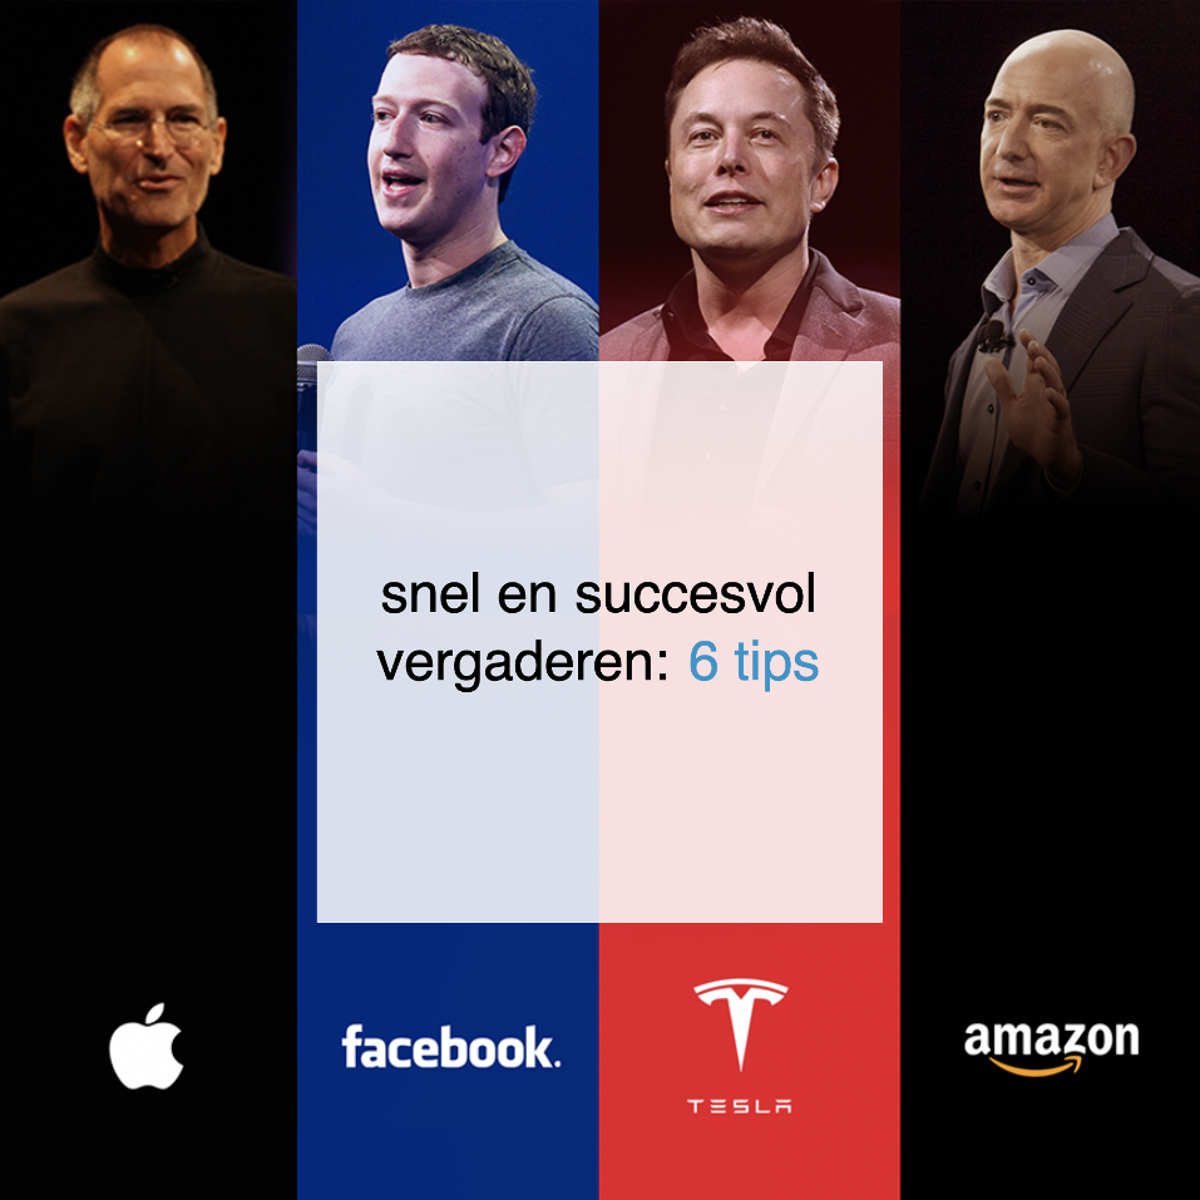 snel en succesvol vergaderen 6 tips van Elon Musk, Jeff Bezos, Mark Zuckerberg en Steve Jobs – CoachSander.nl